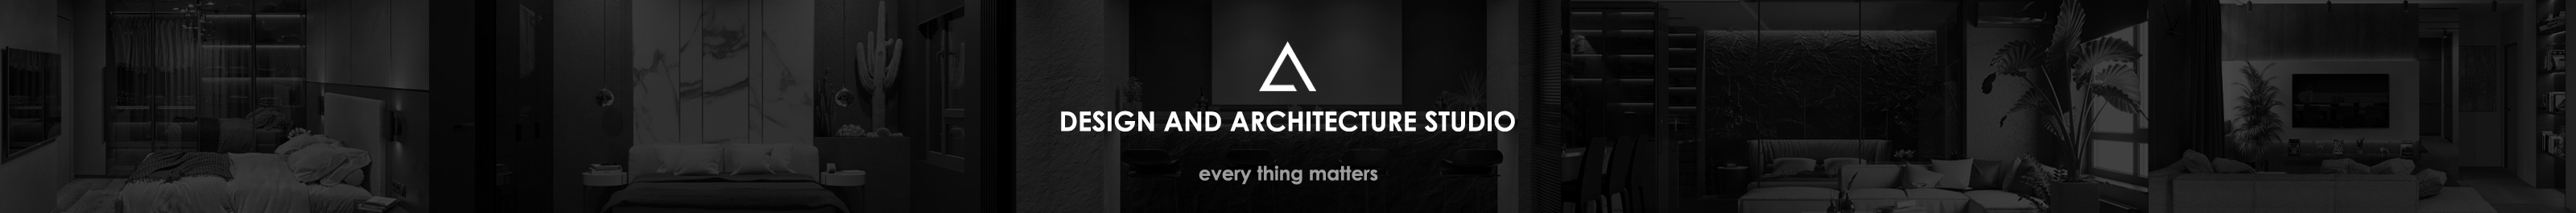 Banner de perfil de AG Architecture